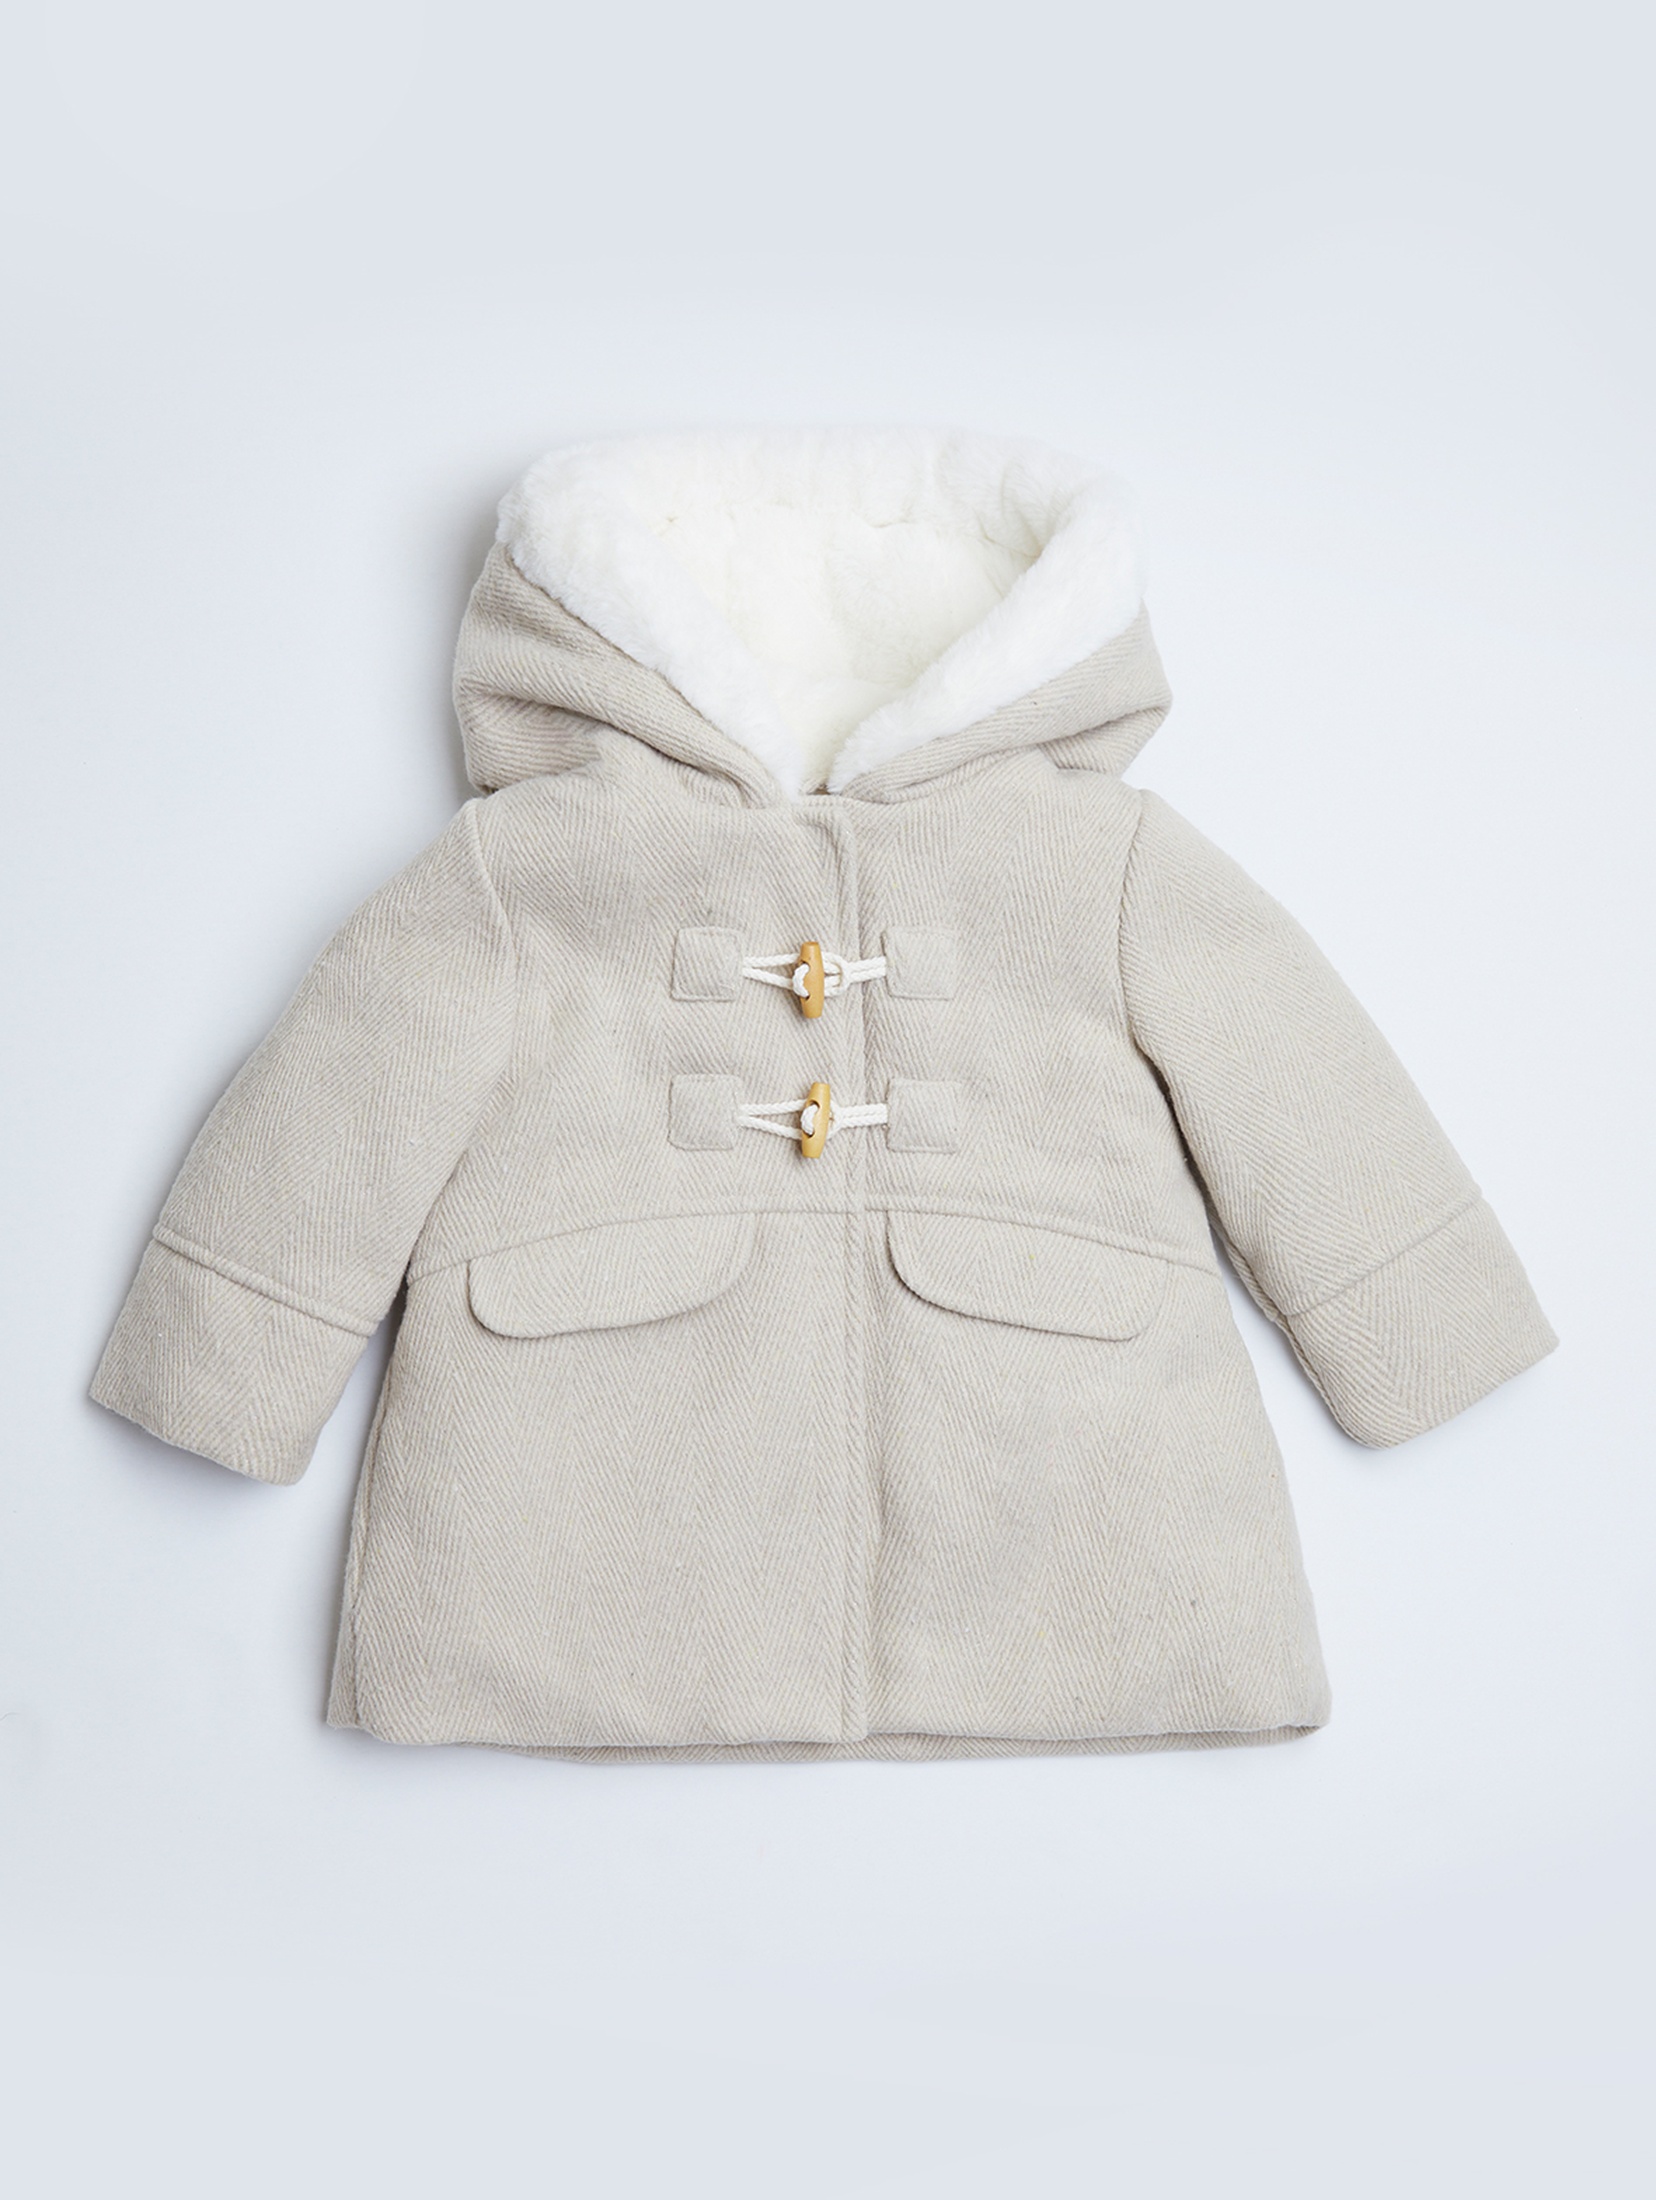 Elegancki płaszcz dla niemowlaka - Limited Edition